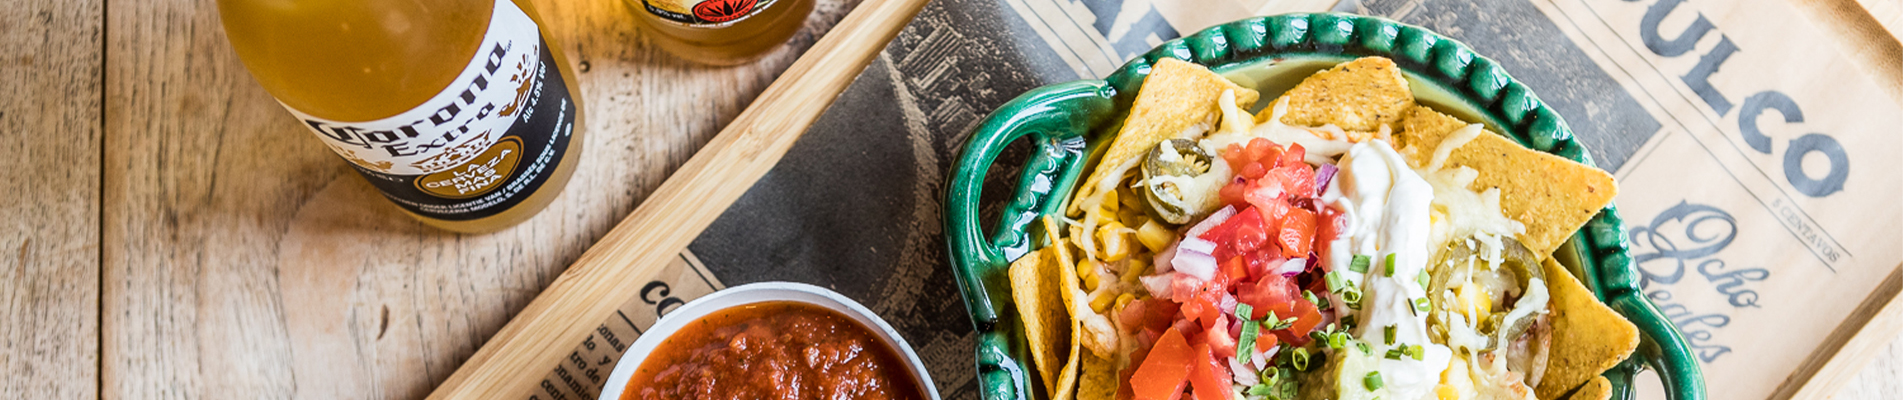 Voor de allerlekkerste Mexicaanse maaltijden bestel je bij ons nieuwste aanwinst Tortillas